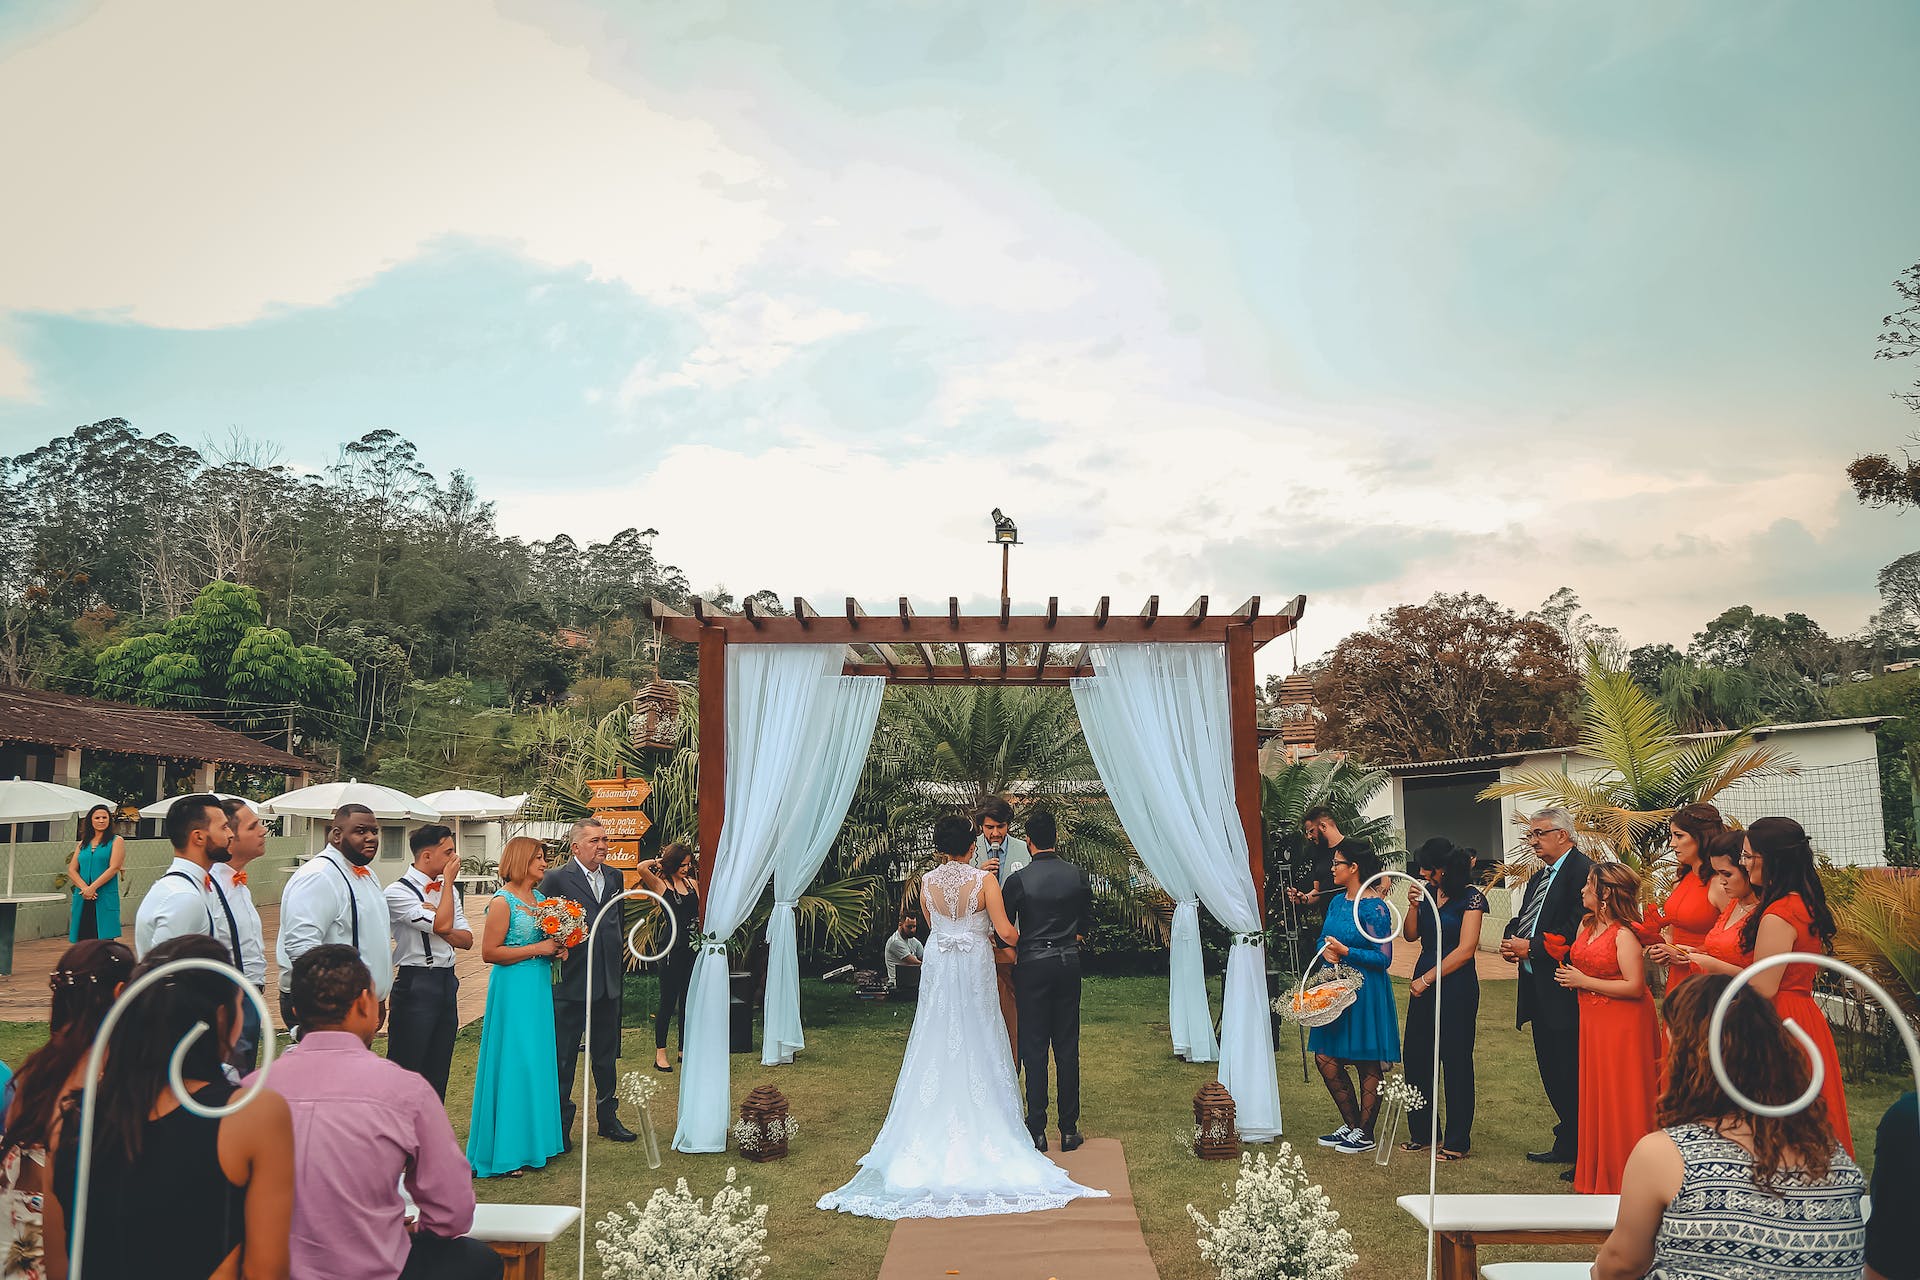 Una ceremonia de boda | Fuente: Pexels